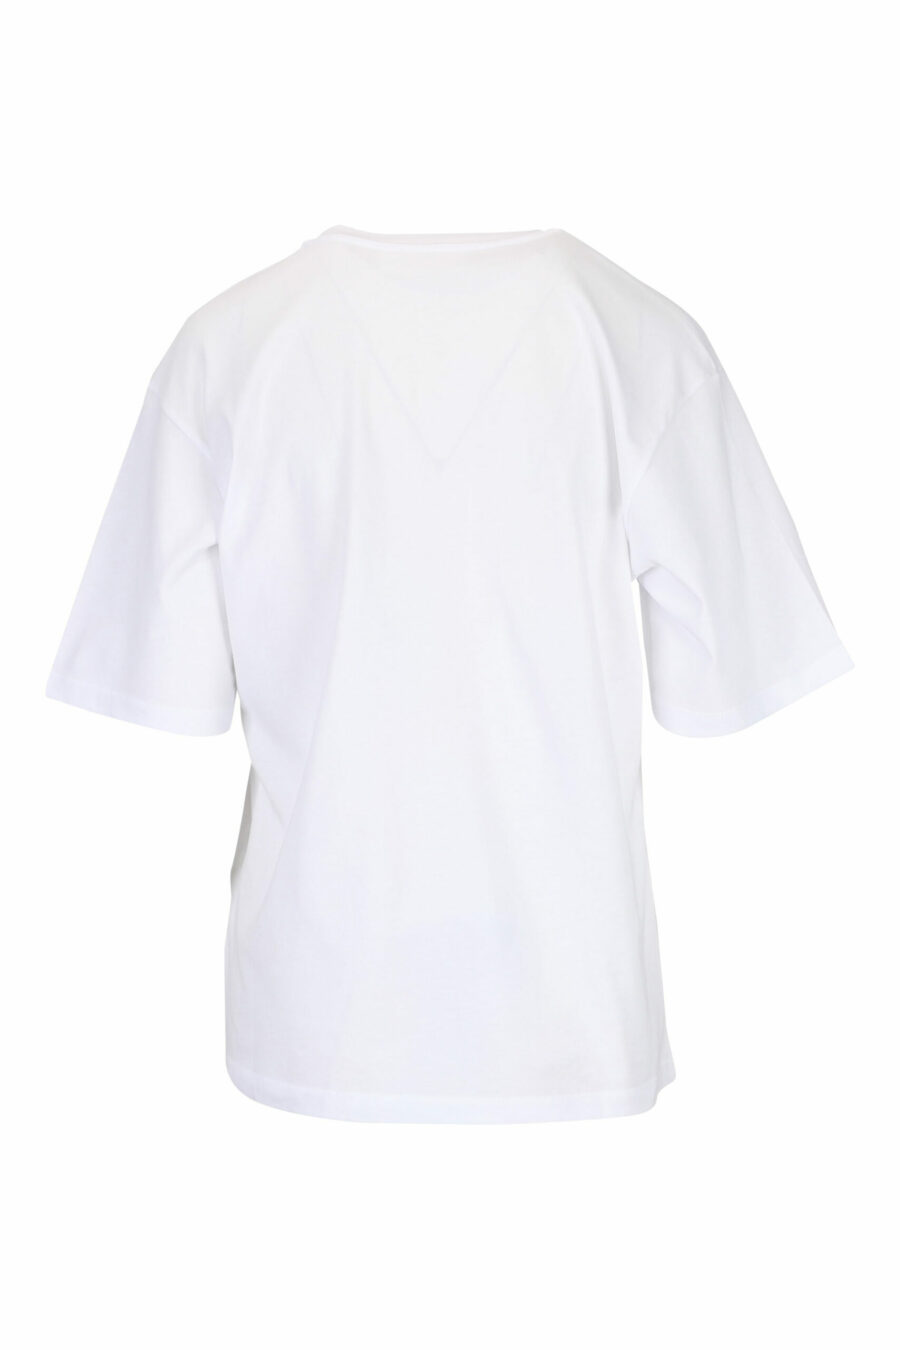 T-shirt blanc avec impression de cœur - 29710541060133 1 scaled